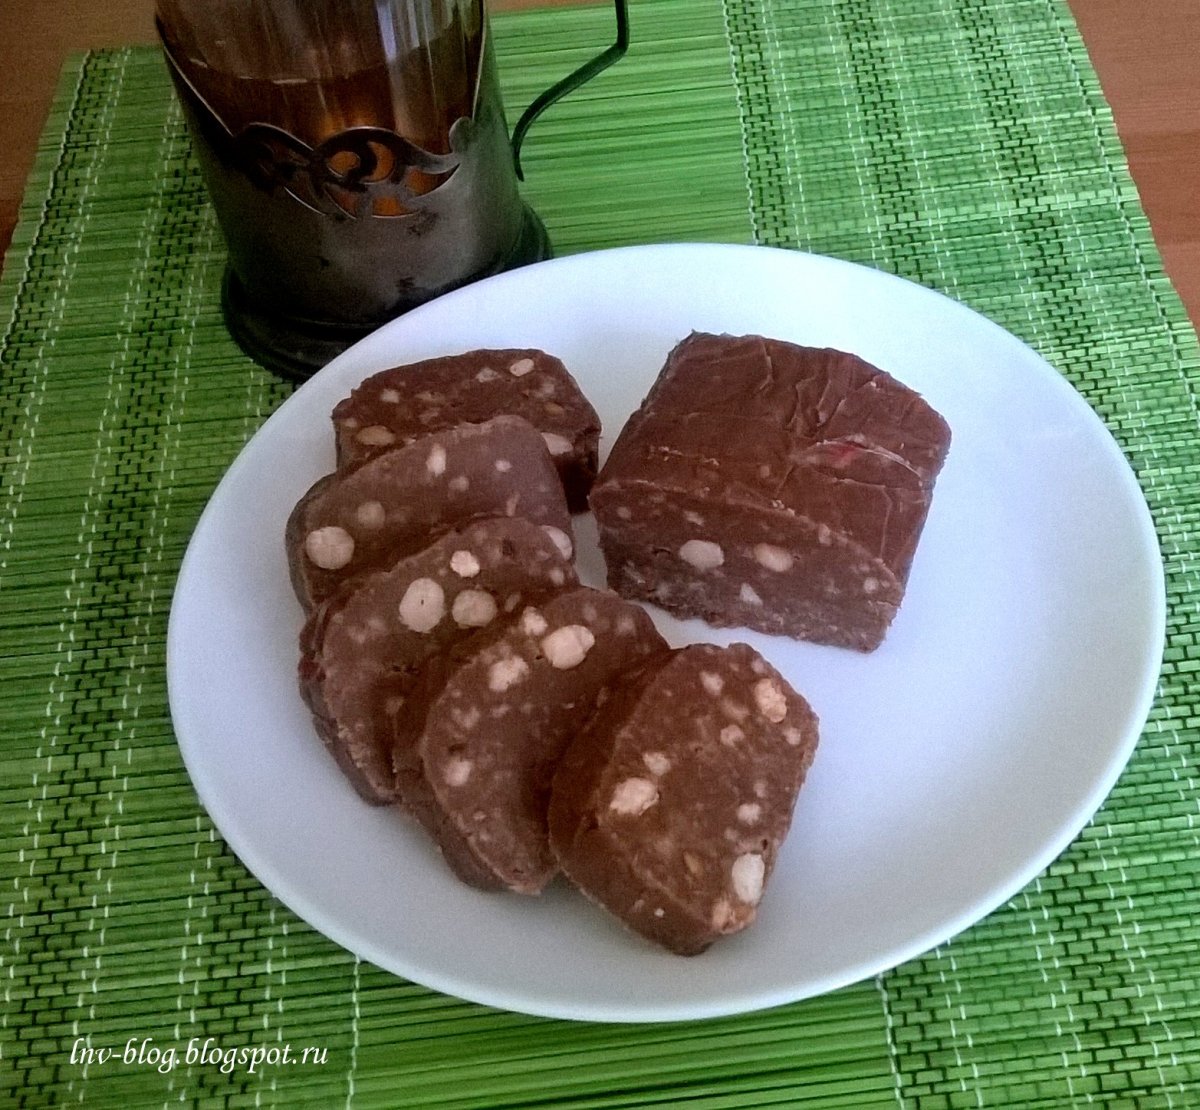 Шоколадная колбаска со сгущенкой